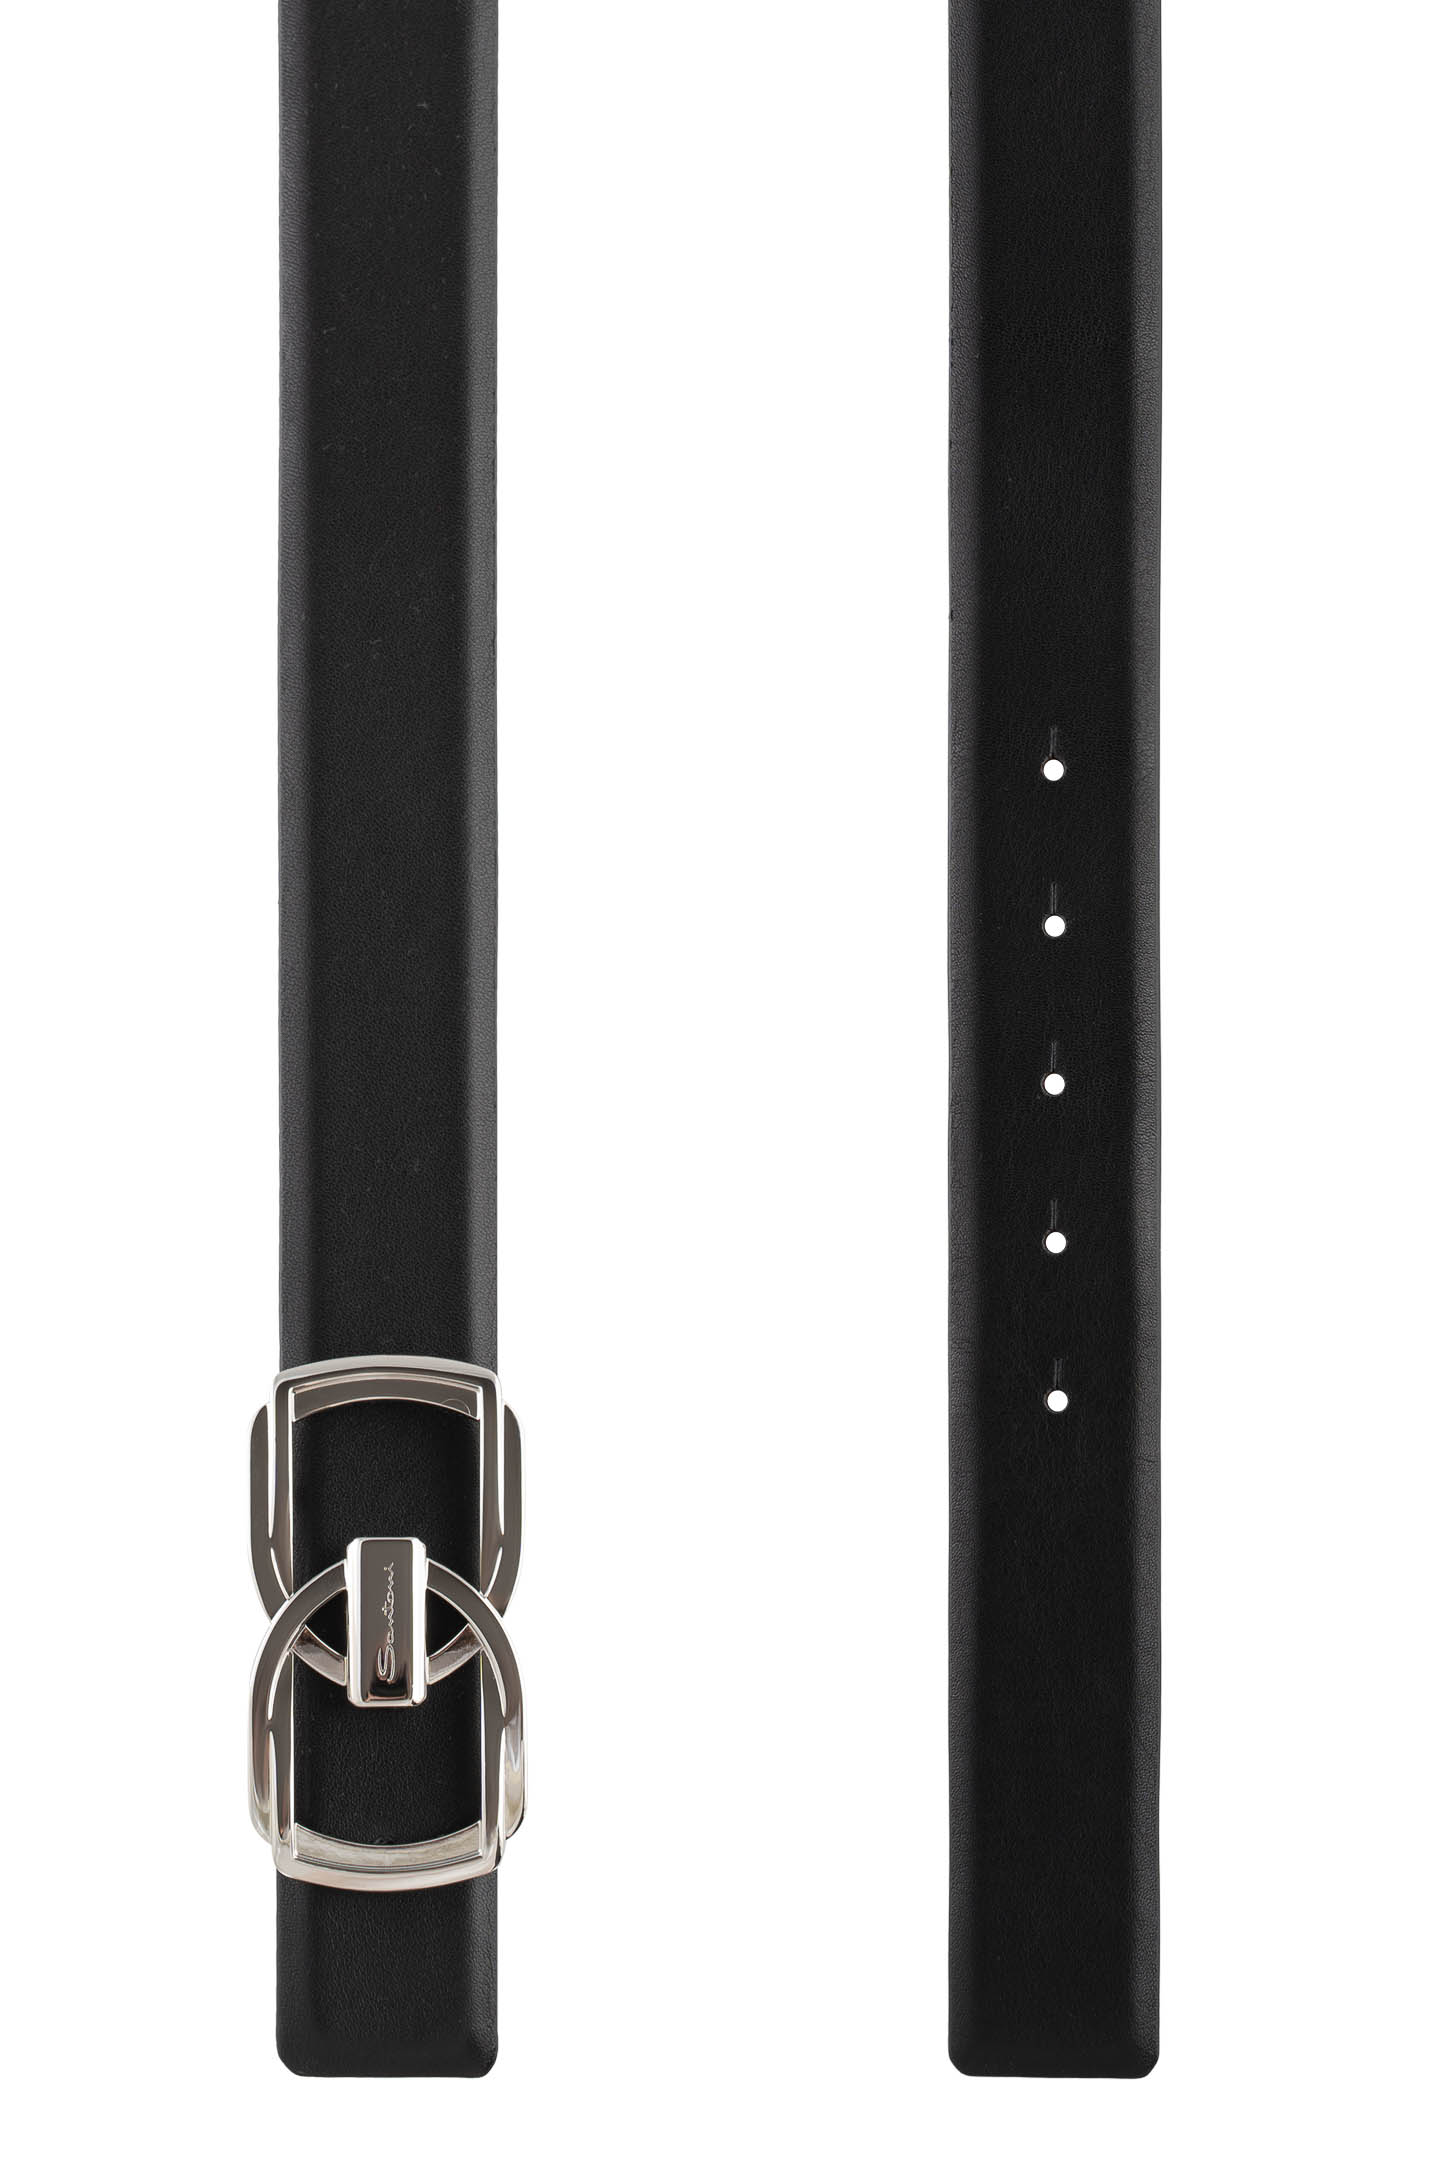 Ремень SANTONI CM35V0103B87EGTQ, цвет: Черный, Мужской